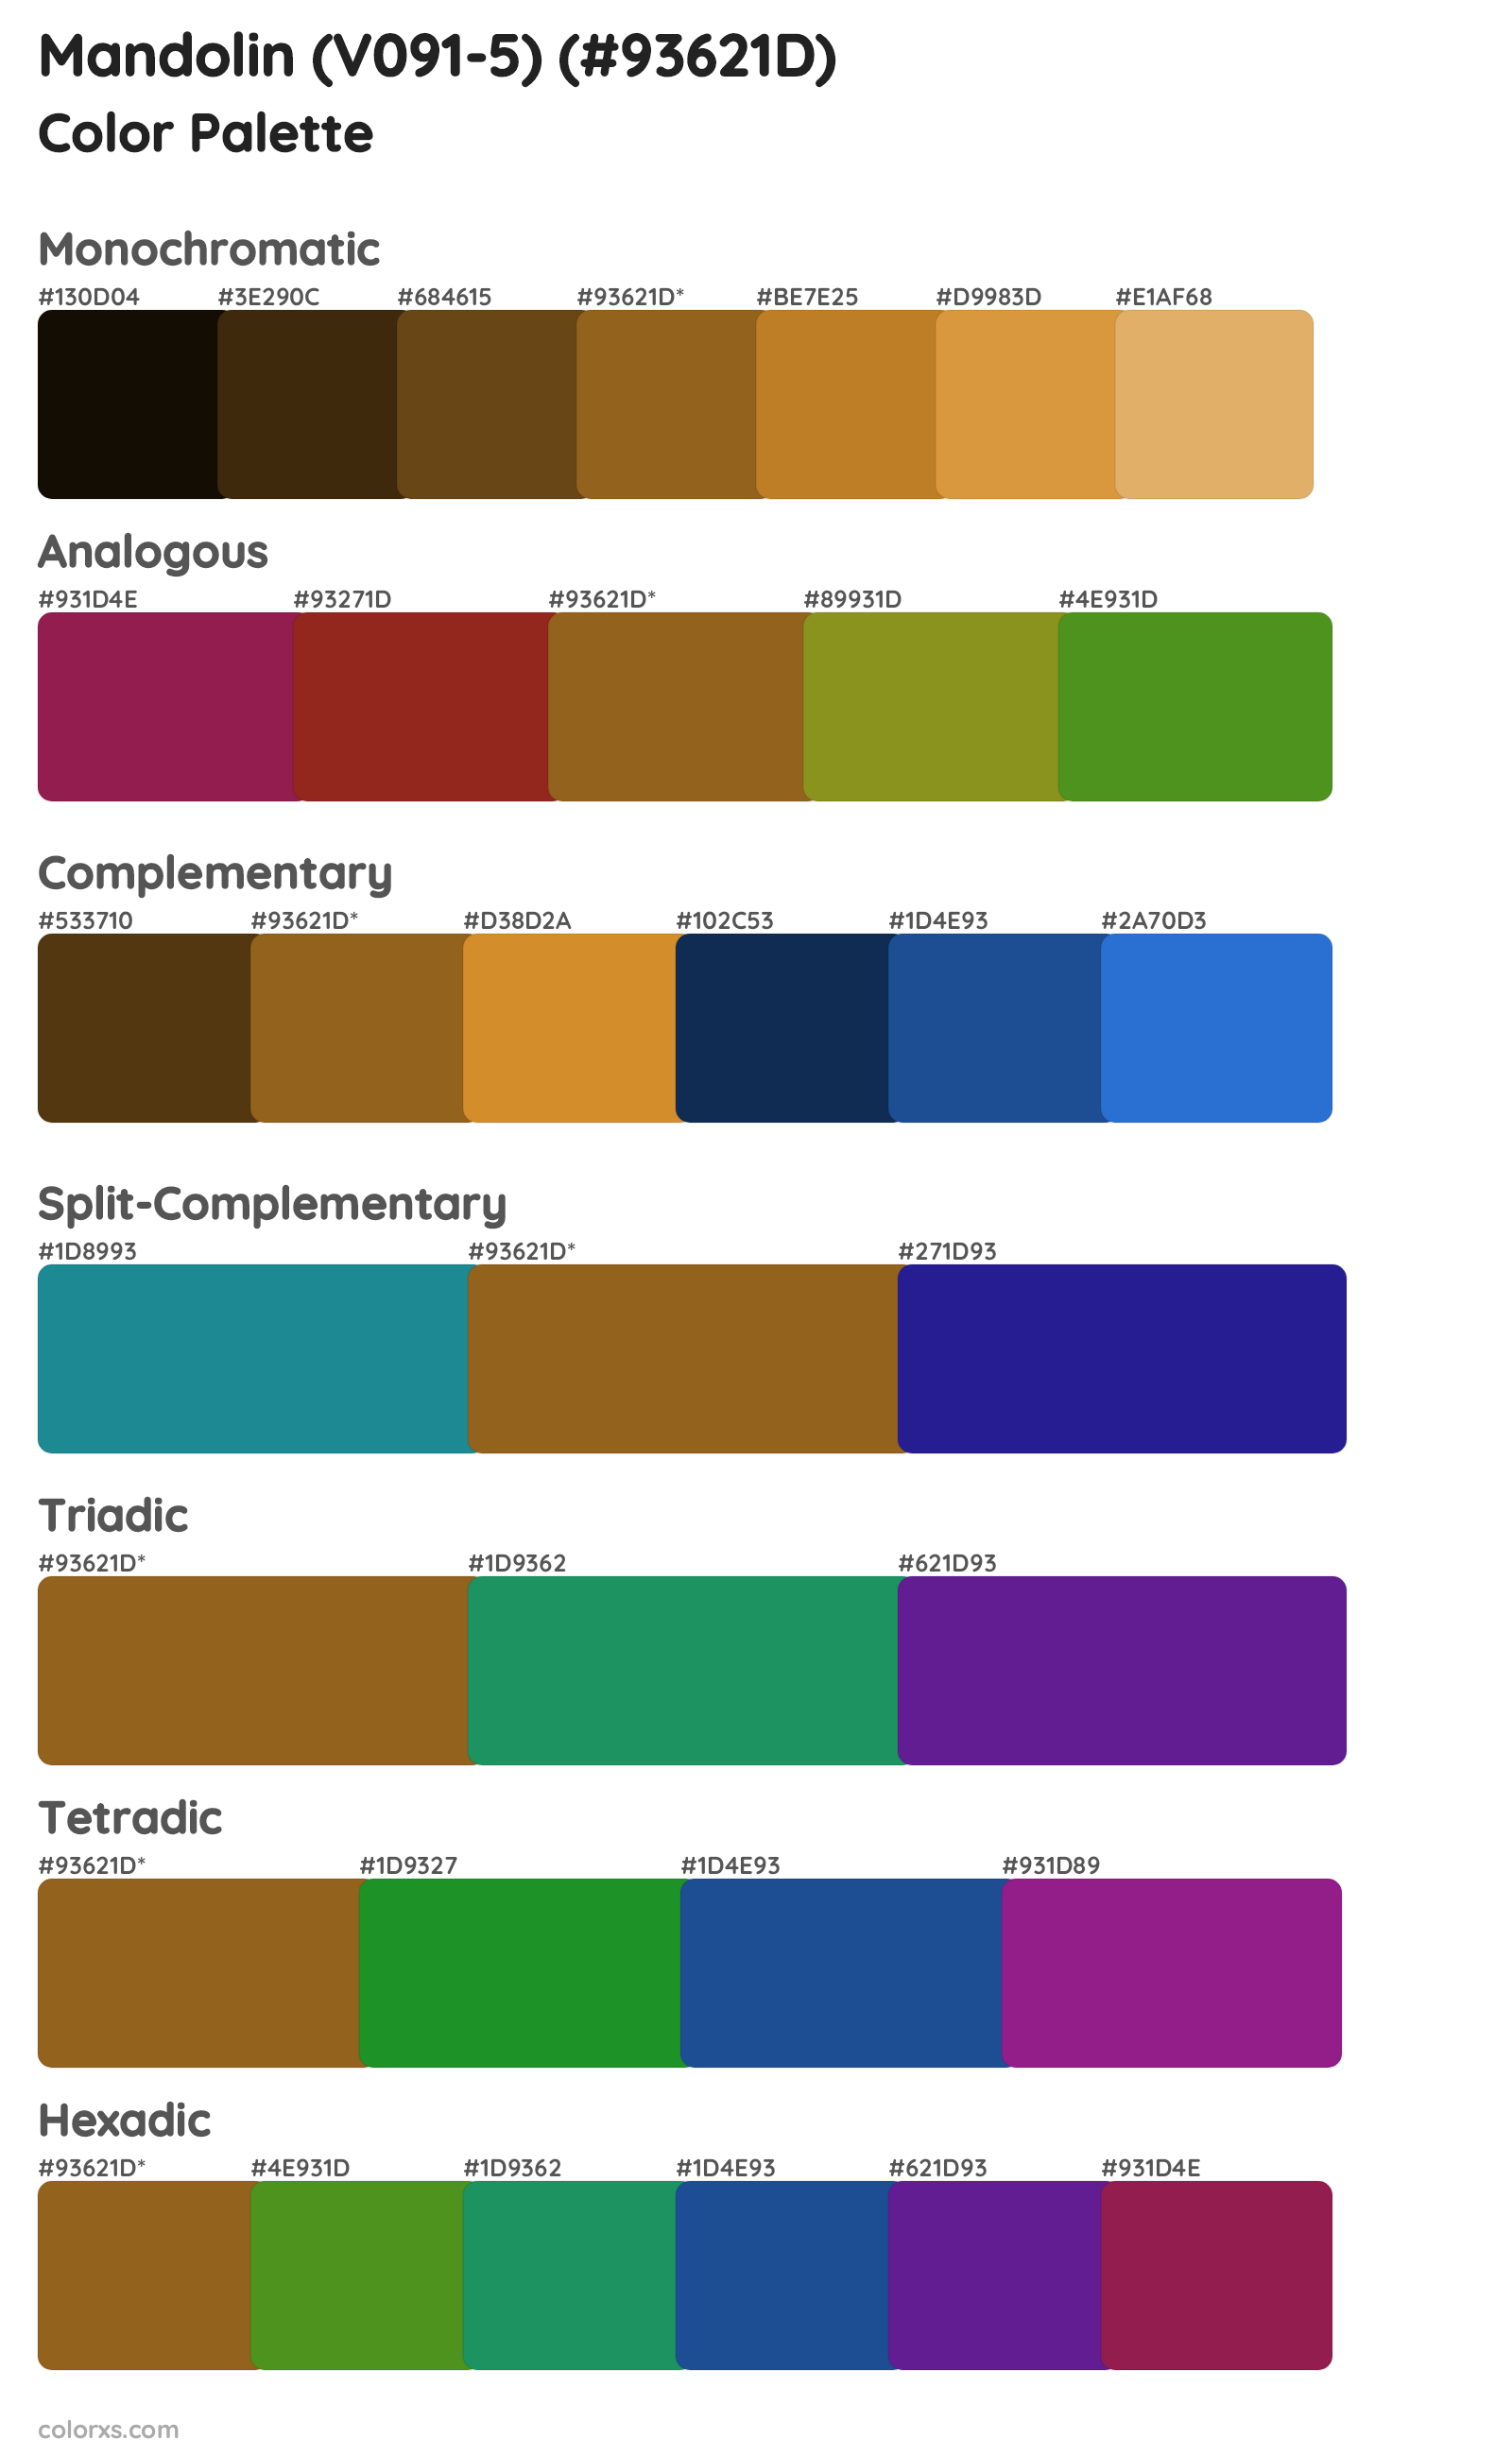 Mandolin (V091-5) Color Scheme Palettes